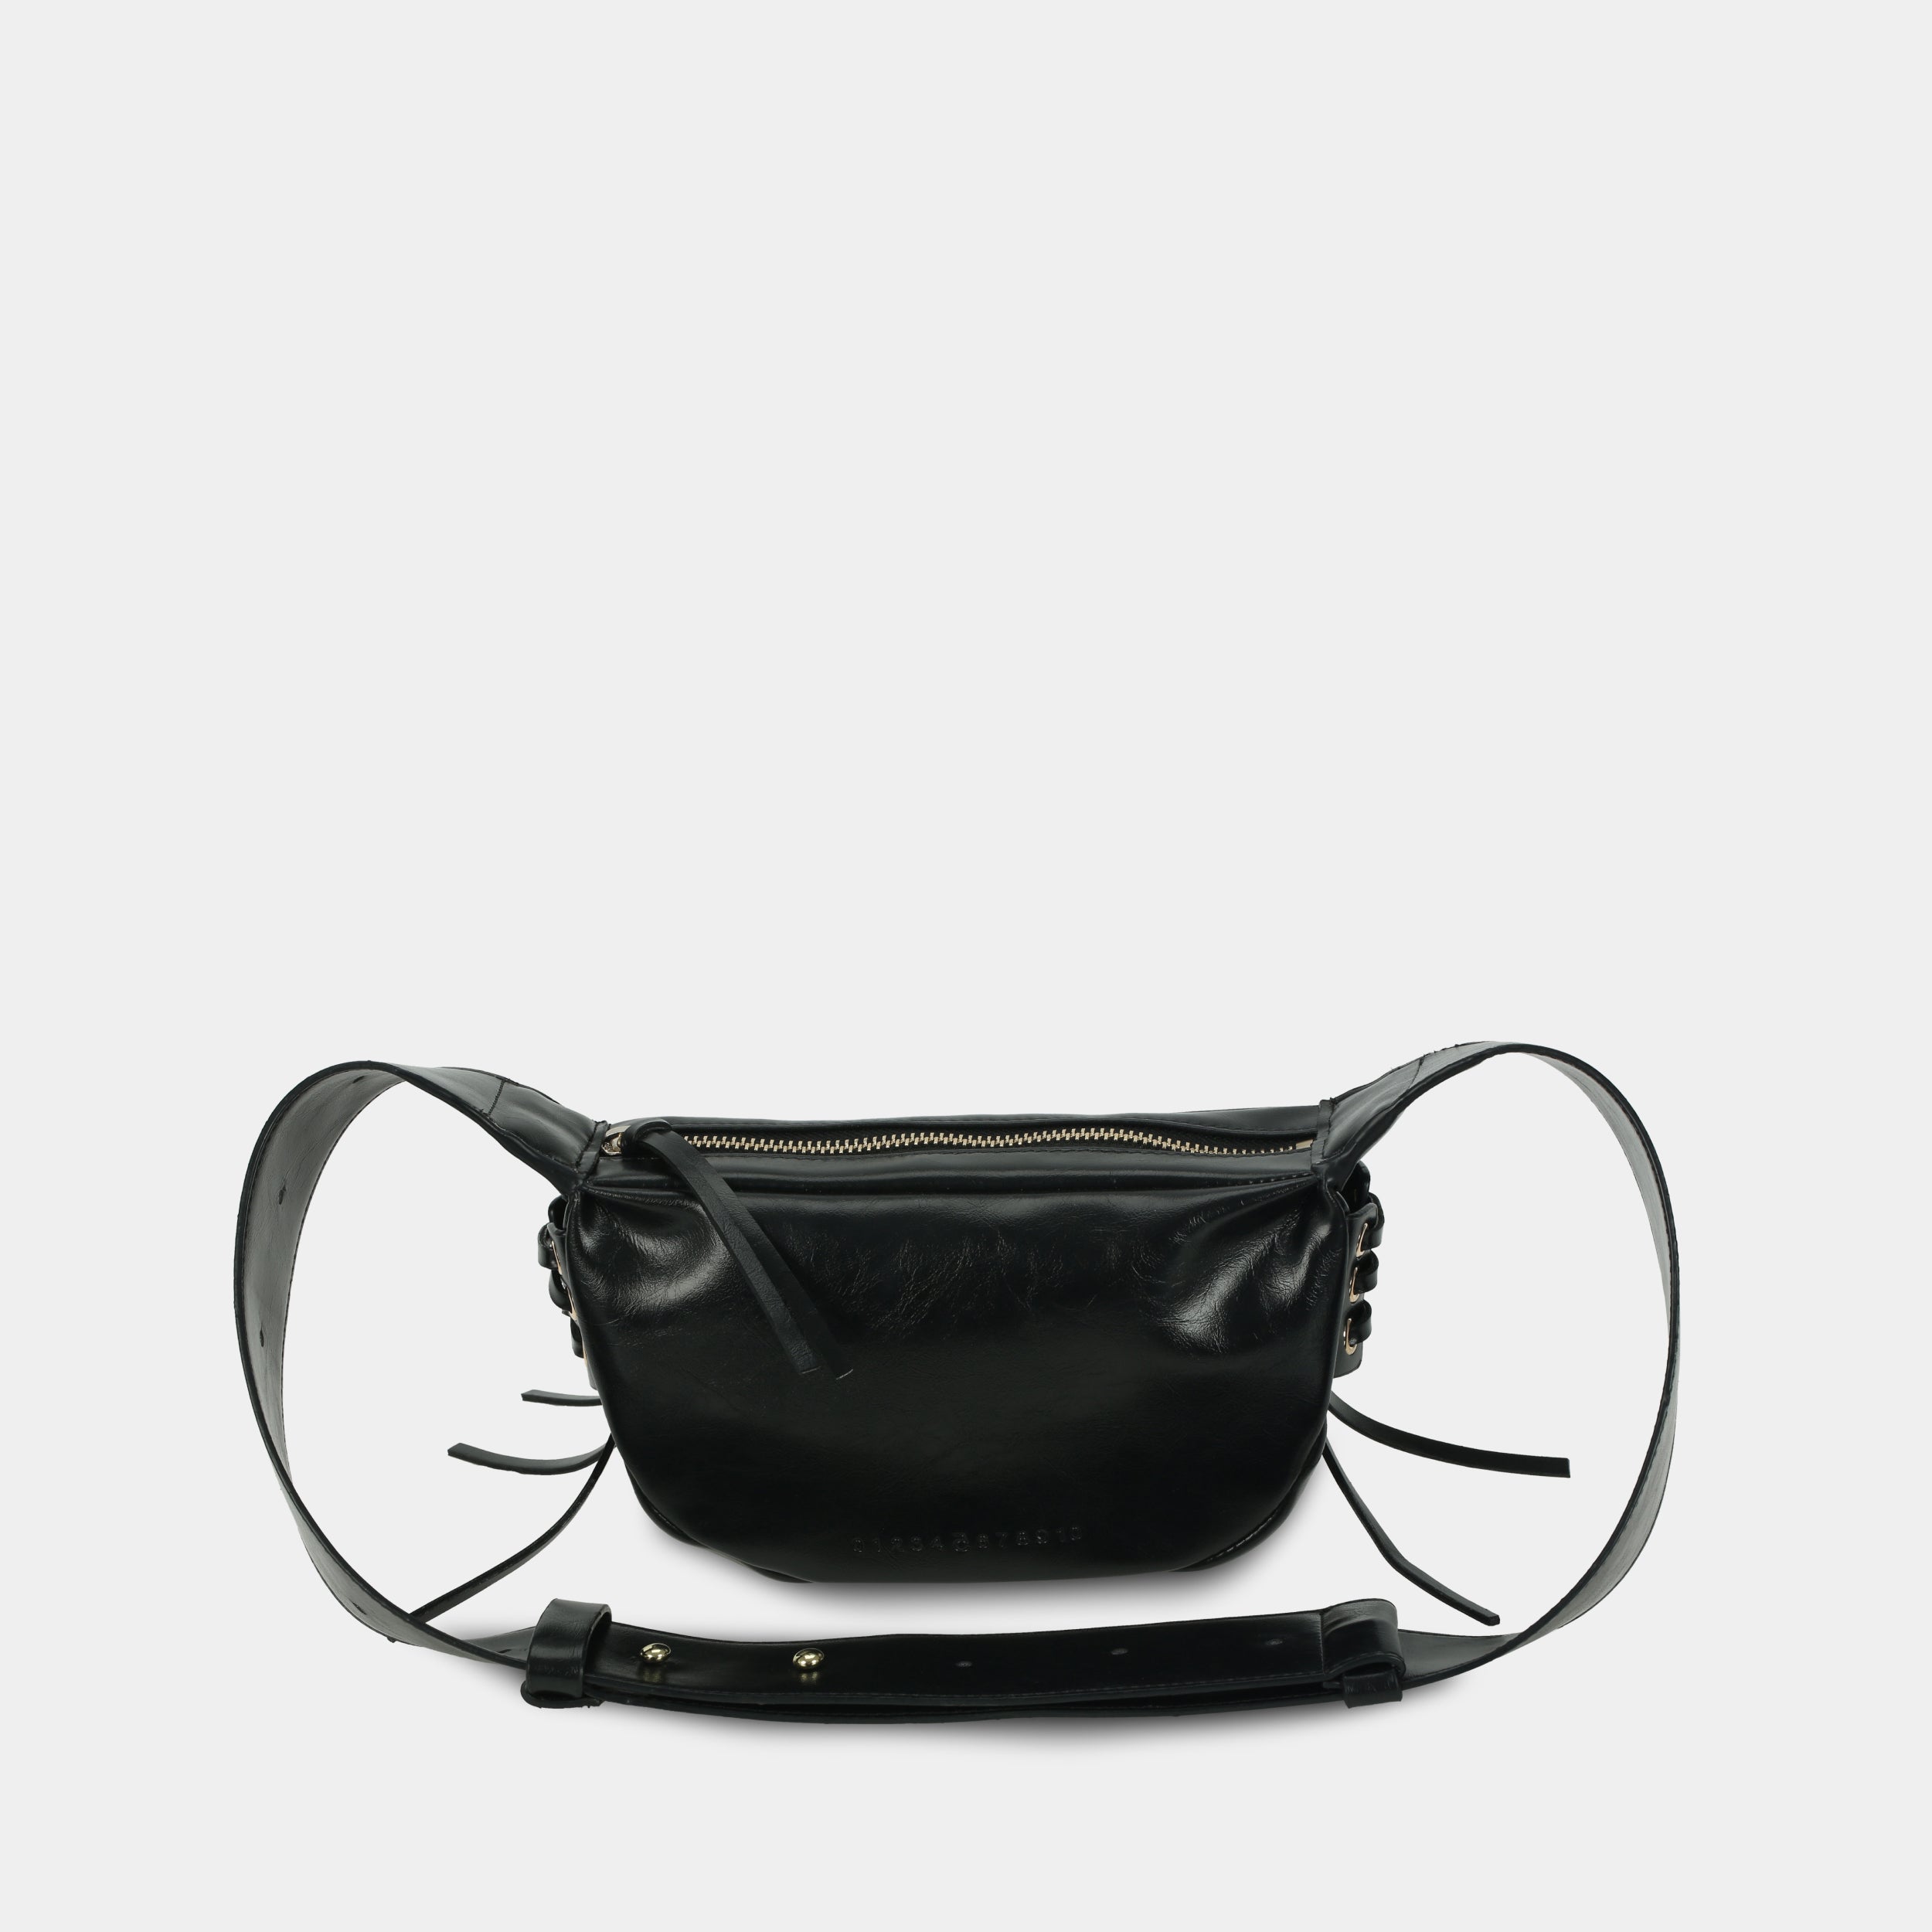 Túi xách LACE size nhỏ (S) màu đen